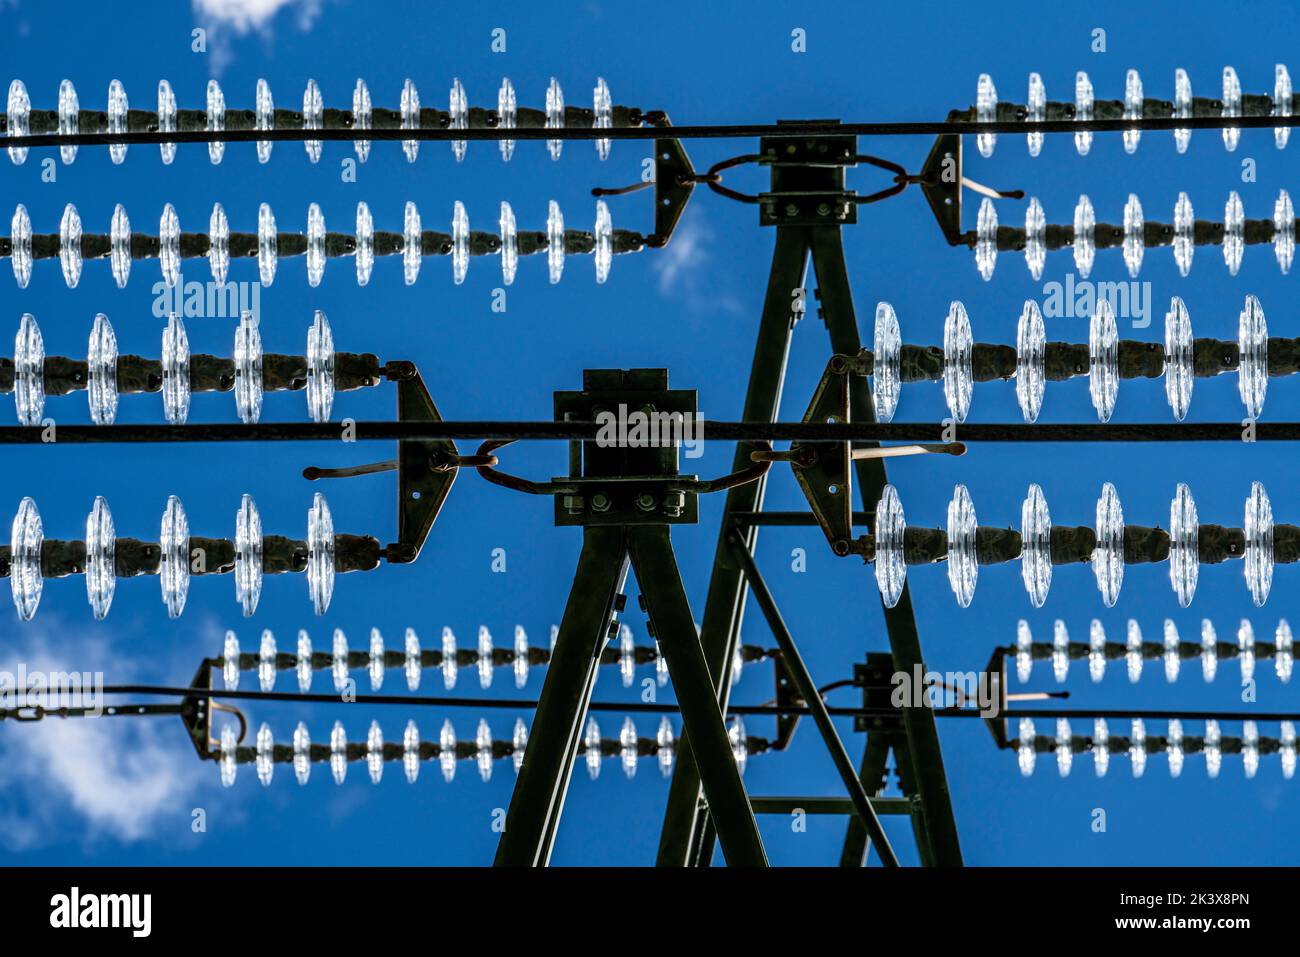 Aisladores hechos de vidrio en una línea de alta tensión, en los postes cuelgan como un dispositivo de suspensión entre el poste y el cable vivo, no aislado, ext Foto de stock